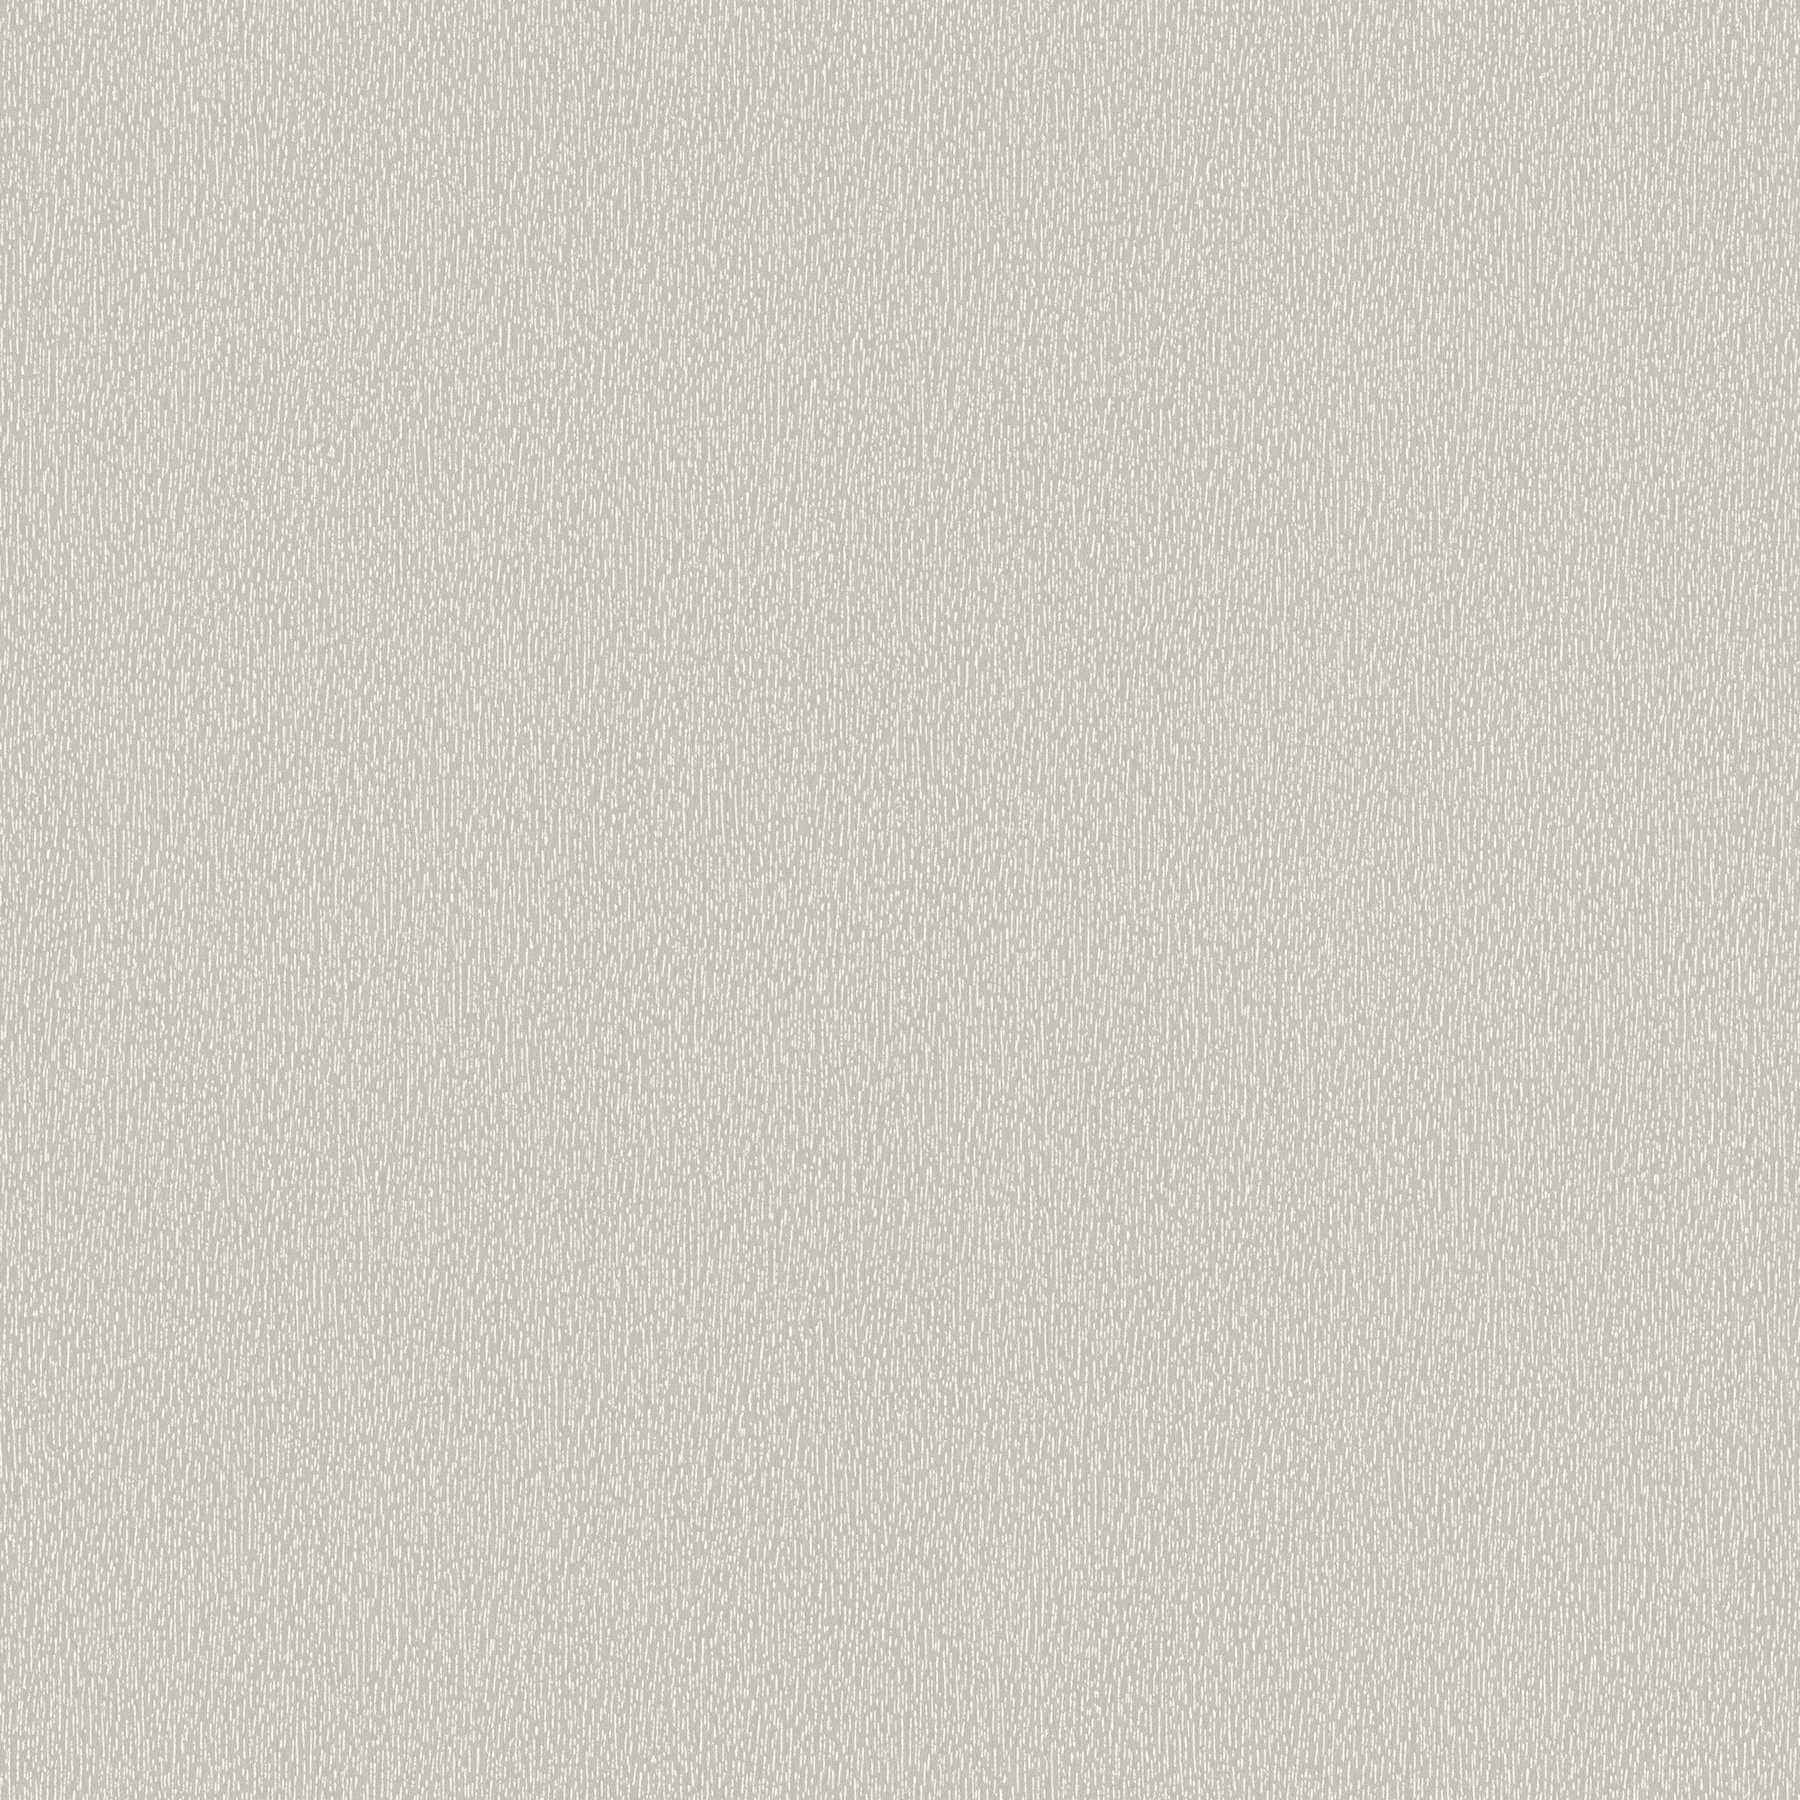 Vliestapete einfarbig mit dezenter Strukturmusterung – Grau, Weiß
